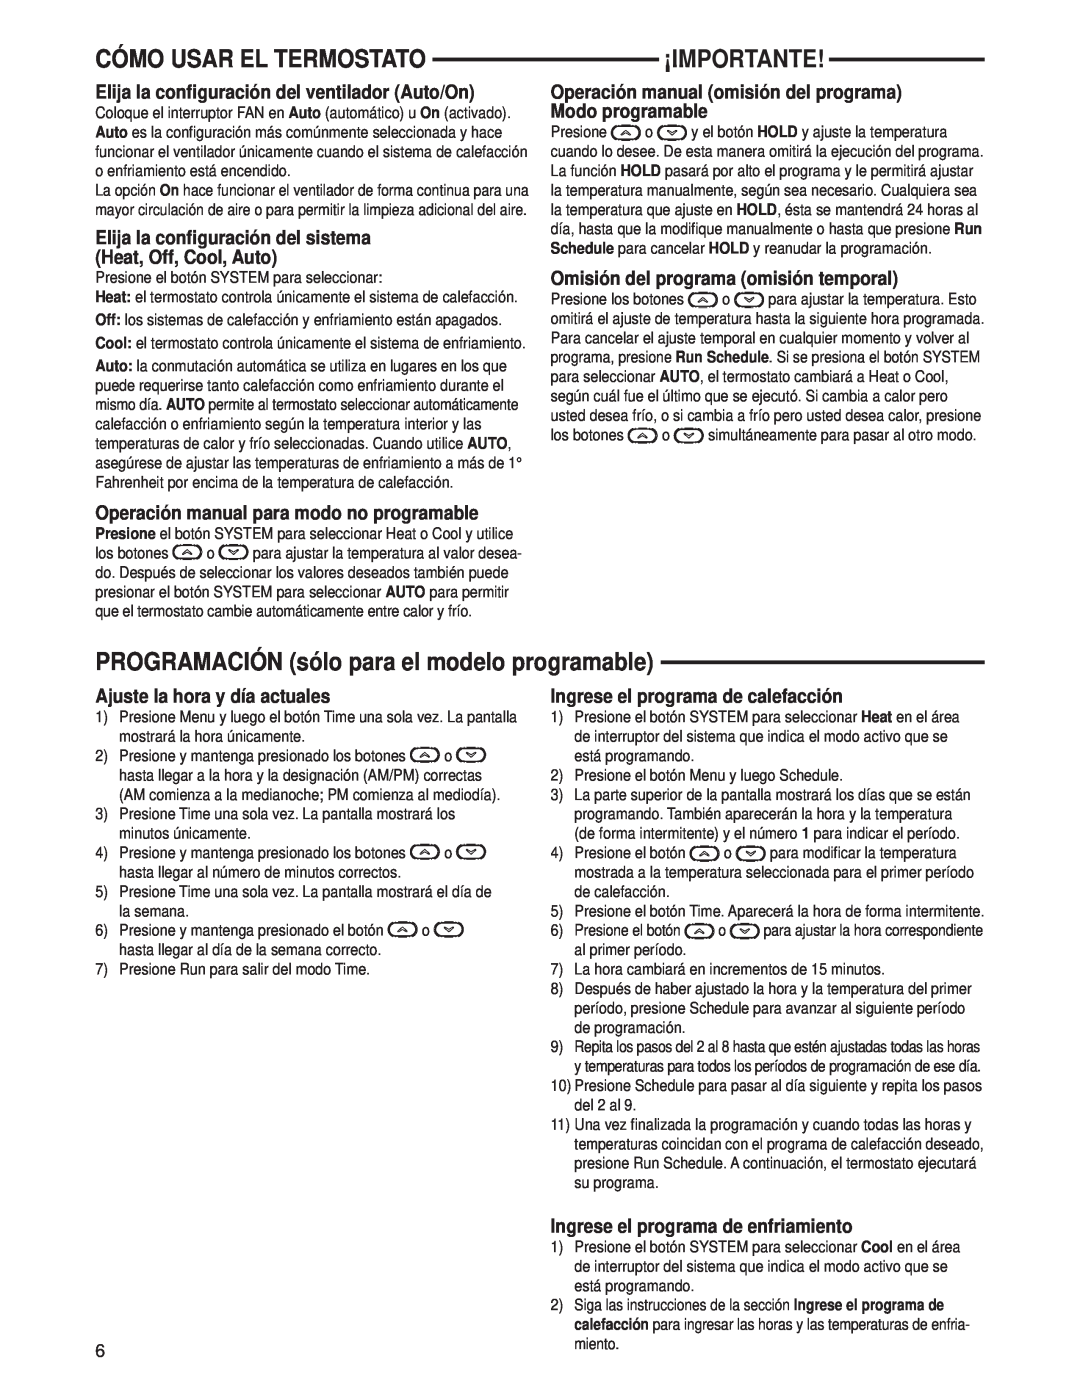 Technics 1F80-0471 specifications Cómo Usar El Termostato, ¡Importante, PROGRAMACIÓN sólo para el modelo programable 